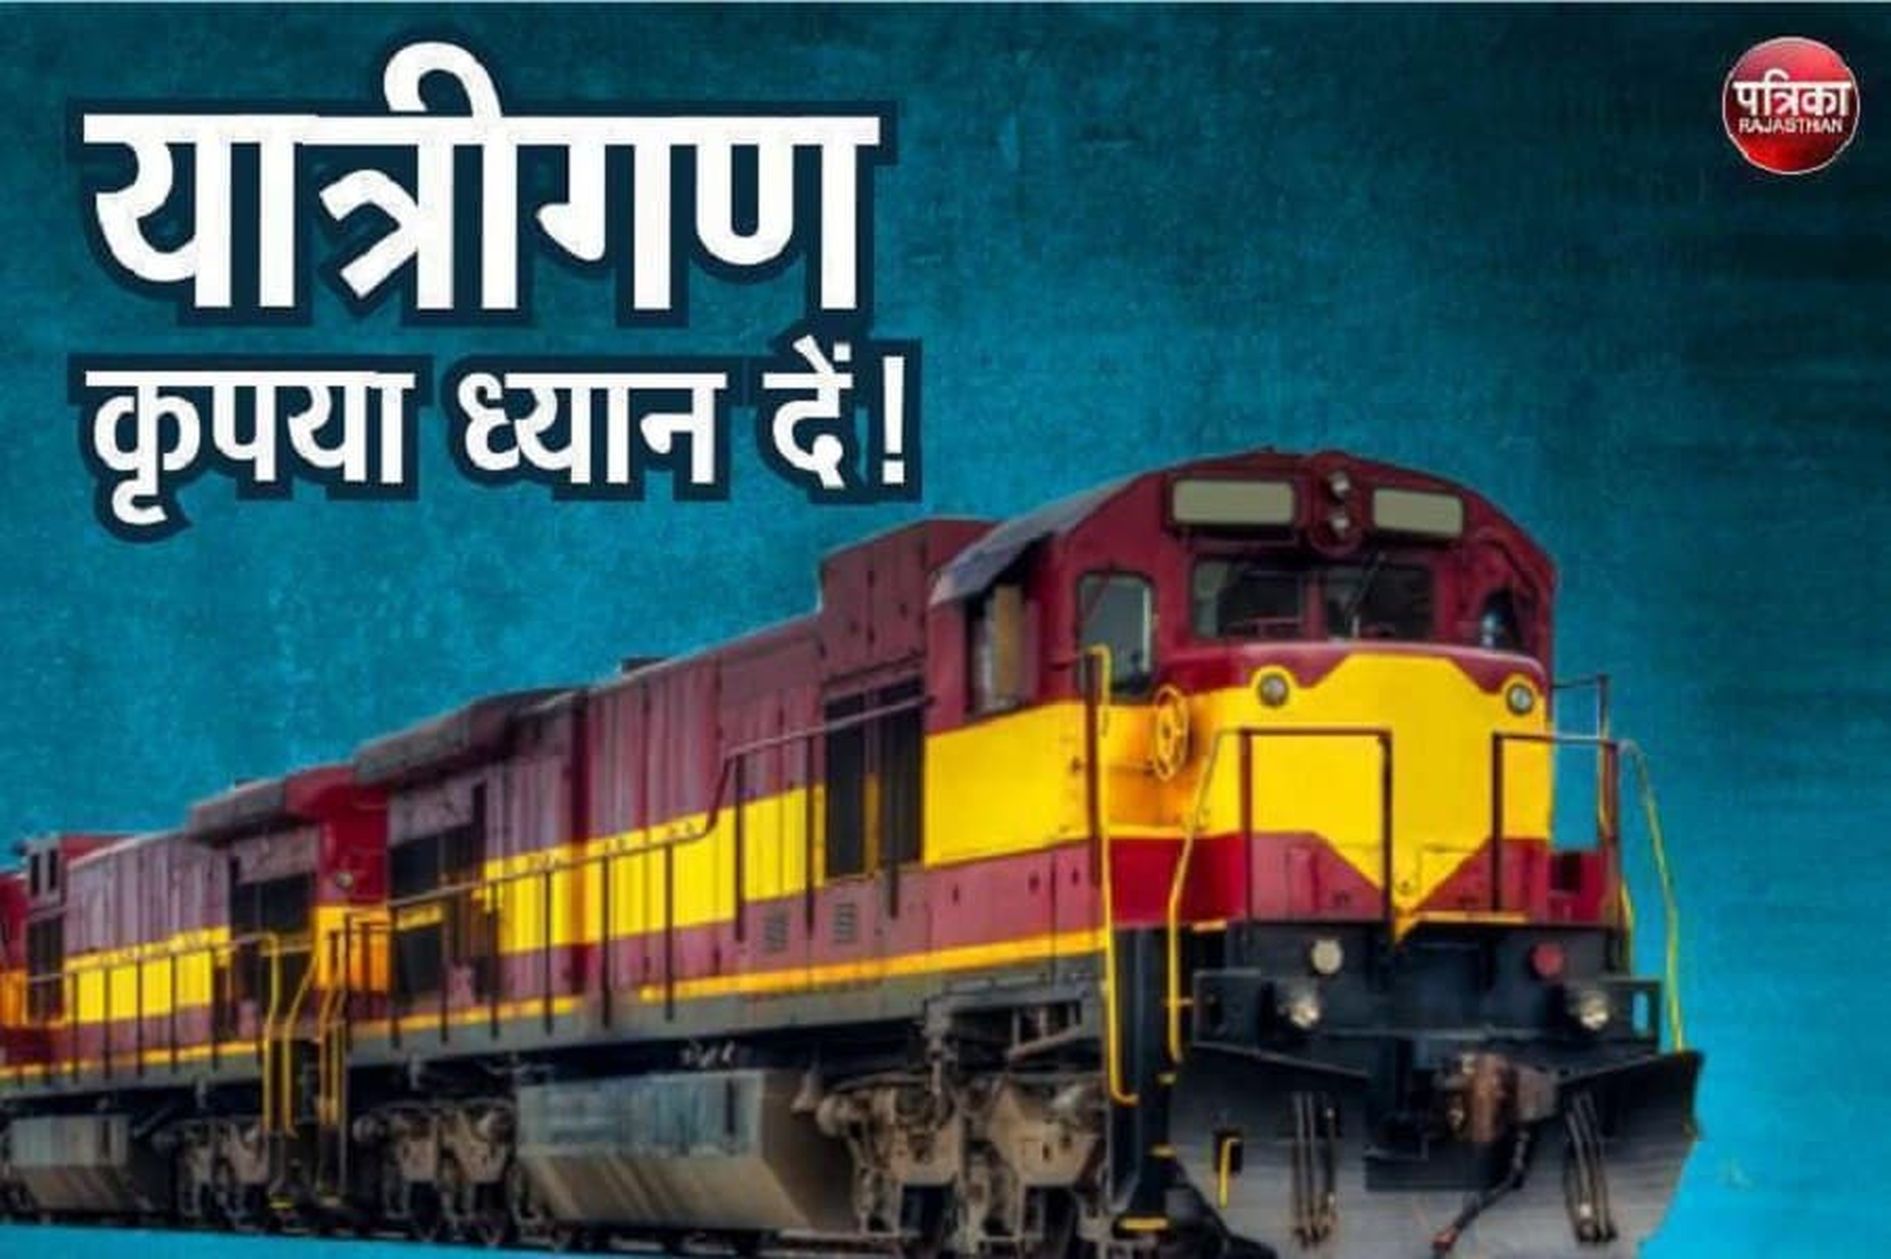 पुष्कर मेड़ता रेलवे लाइन परियोजना : राजस्थान का भारत के इन 4 राज्यों से होगा
सीधा सम्पर्क! बढ़ेगा व्यापार, पर्यटन और रोजगार